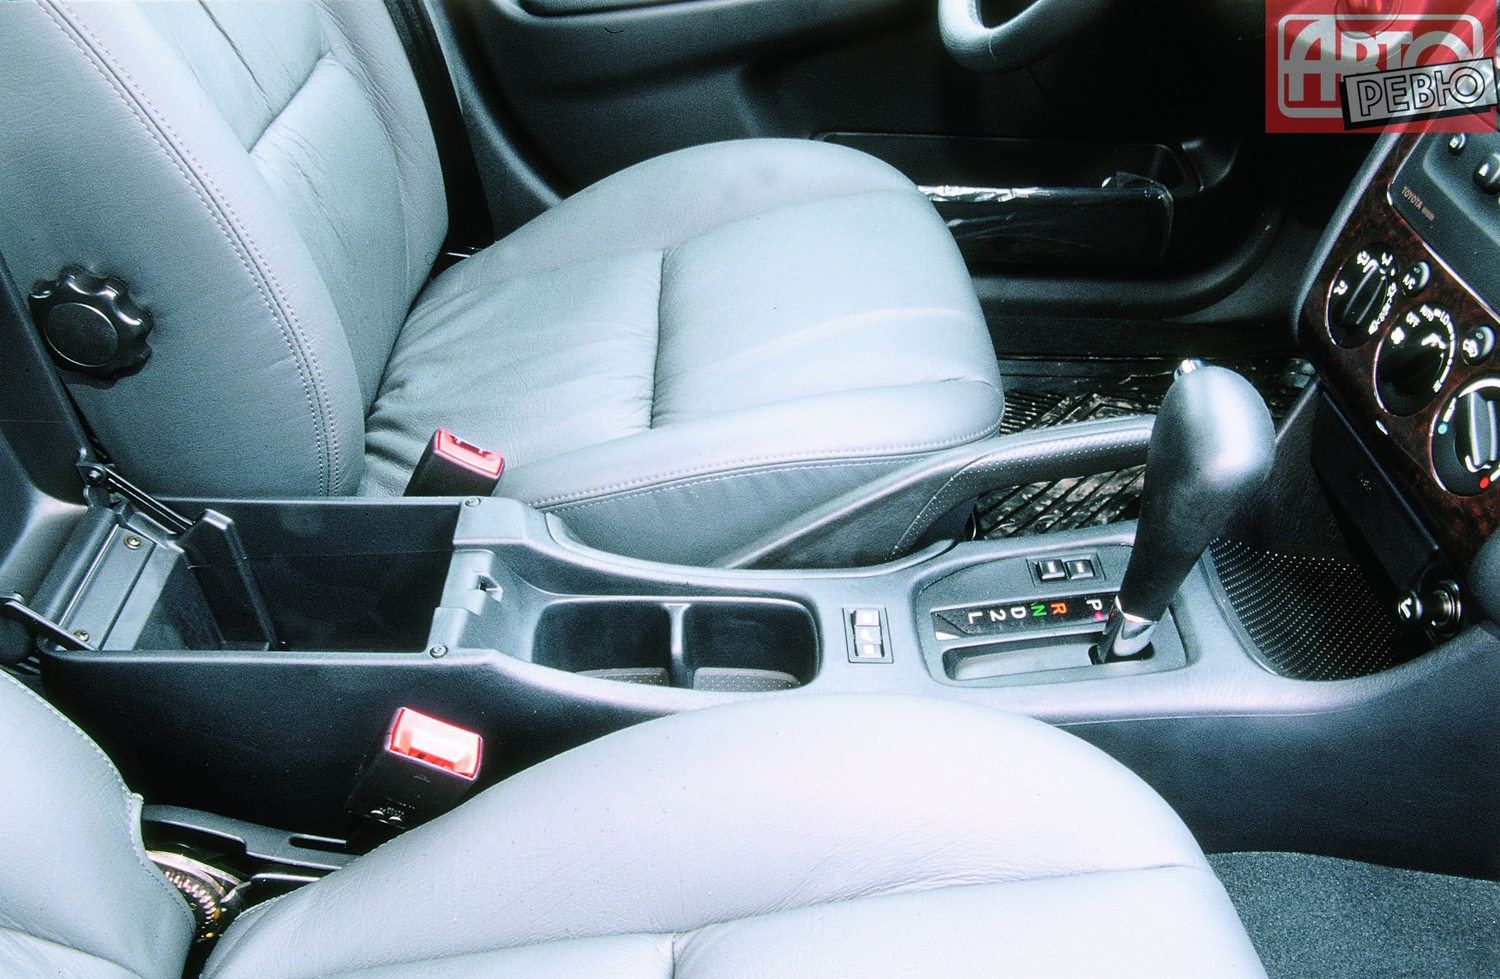 хэтчбек 5 дв. Toyota Avensis 2000 - 2003г выпуска модификация 1.6 MT (110 л.с.)